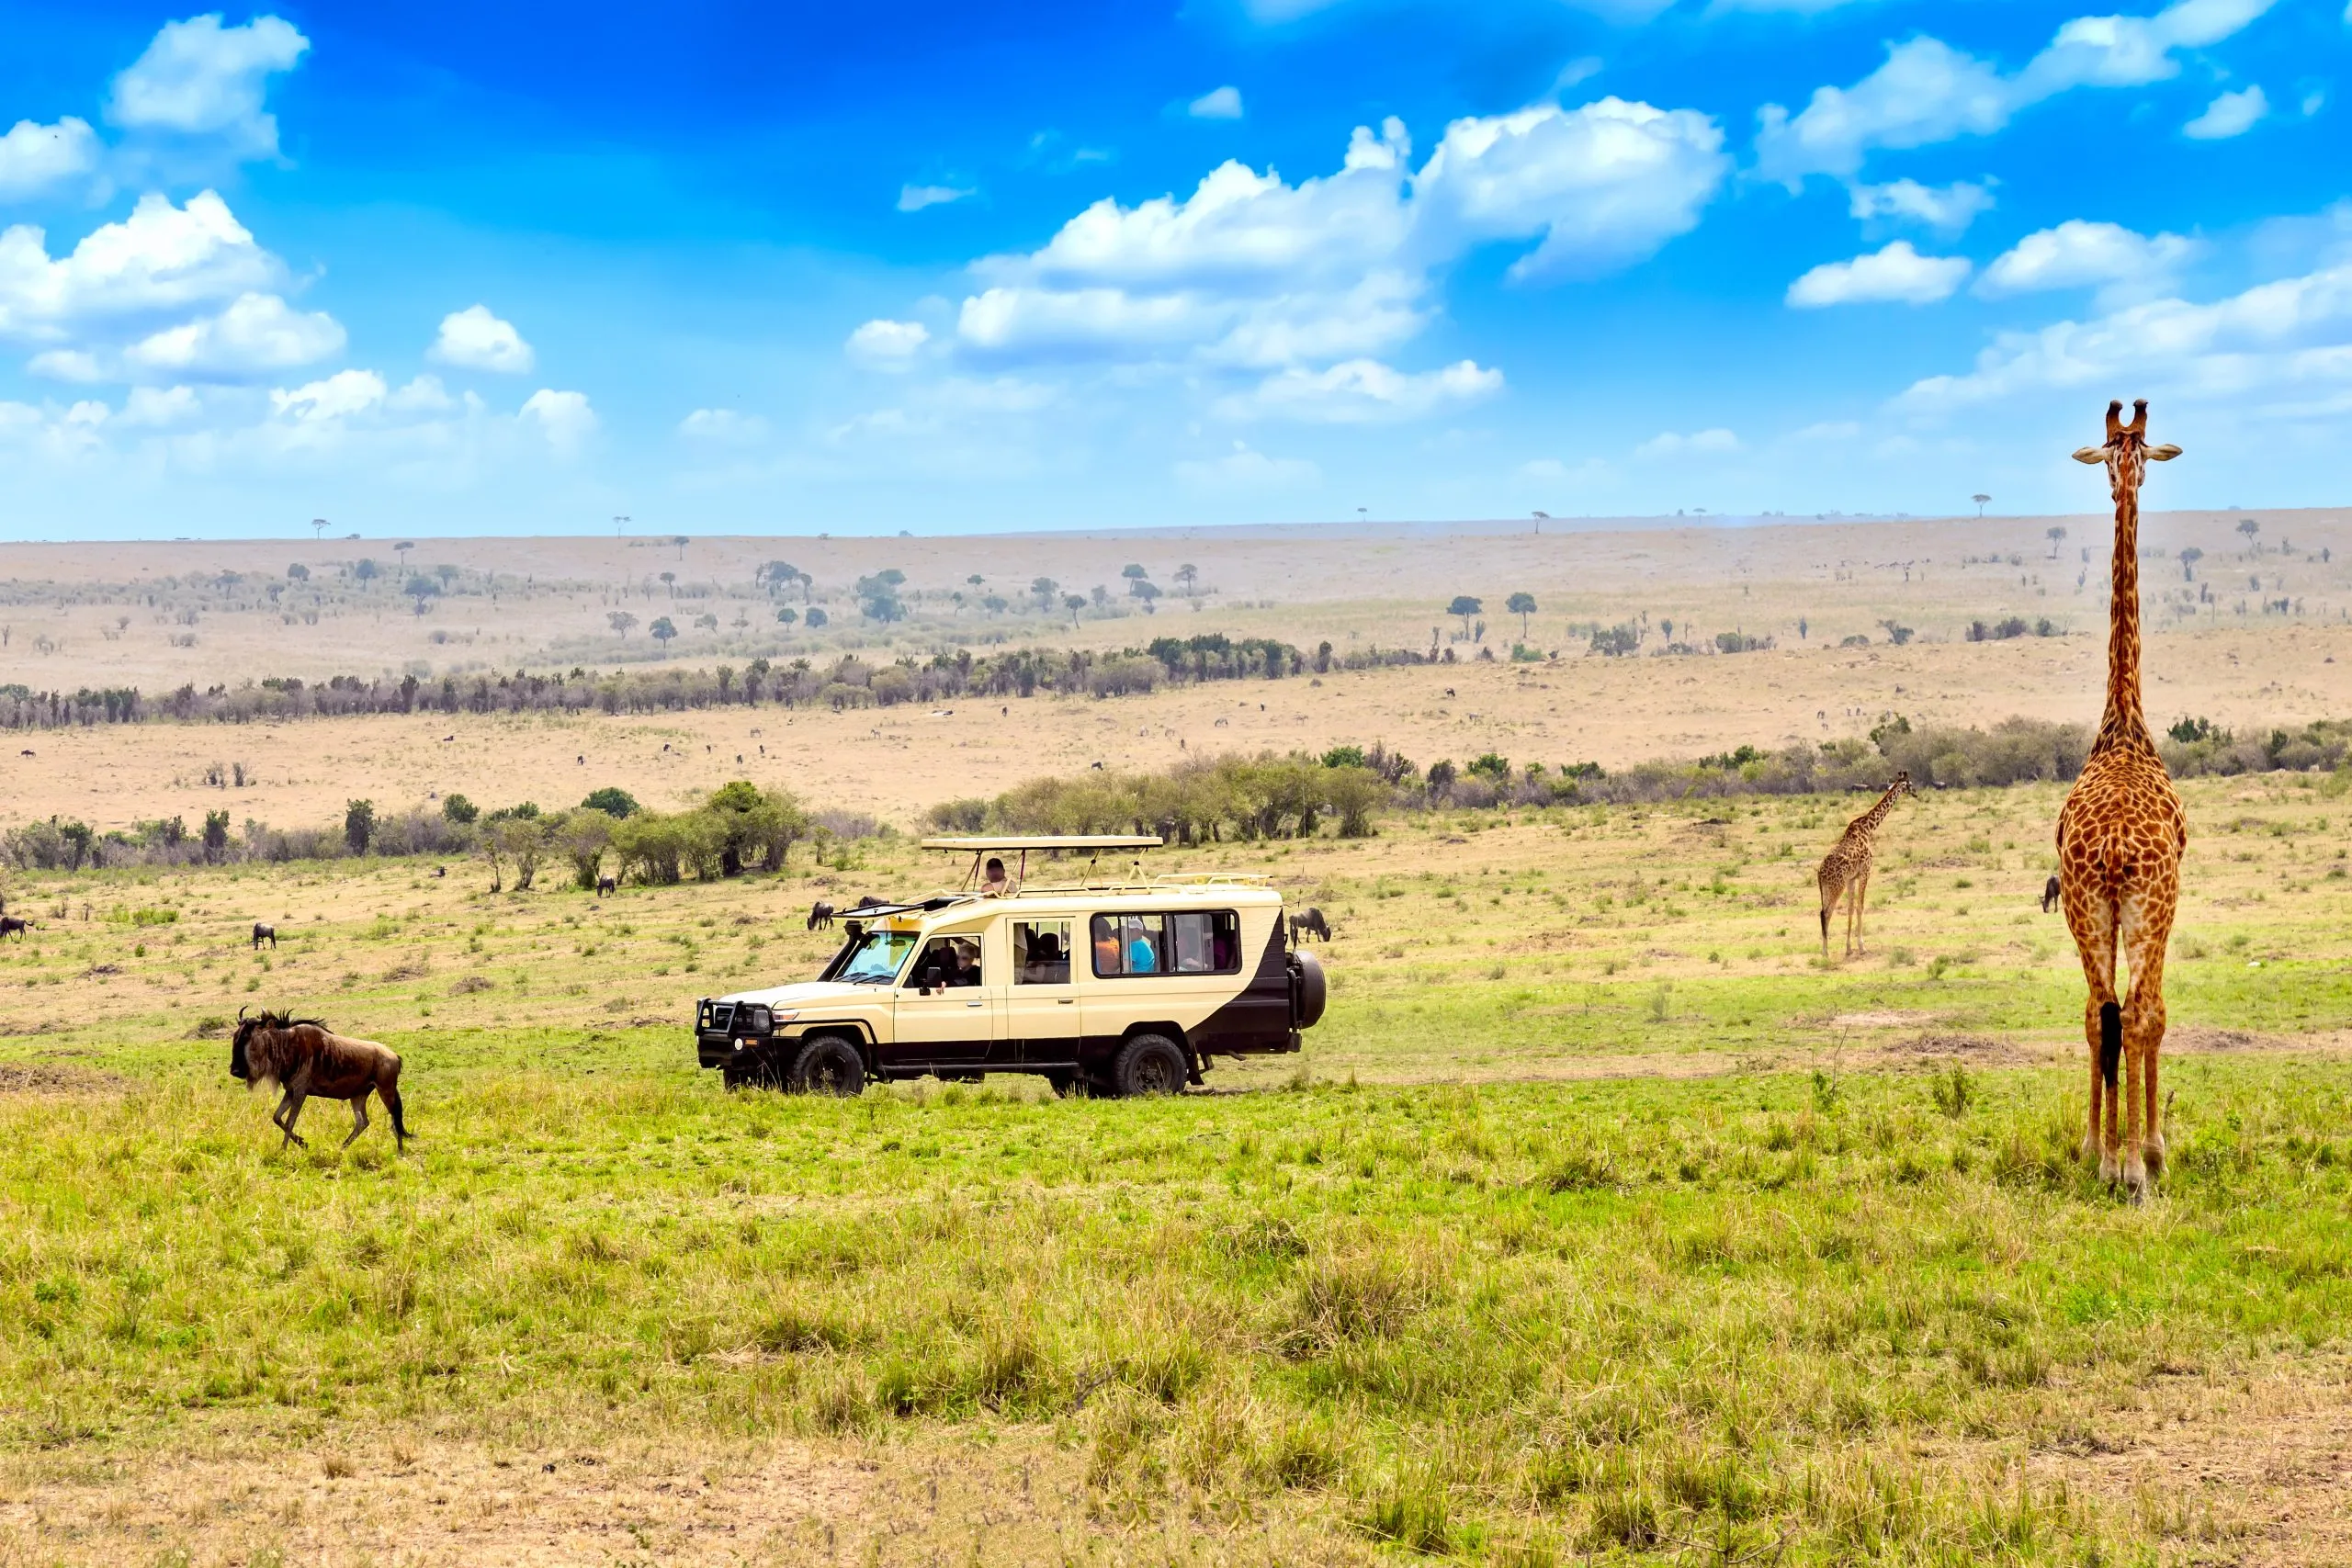 Wilde Giraffe und Gnu in der Nähe von Safari-Auto in Masai Mara National Park, Kenia. Safari-Konzept. Afrikanische Reise Landschaft